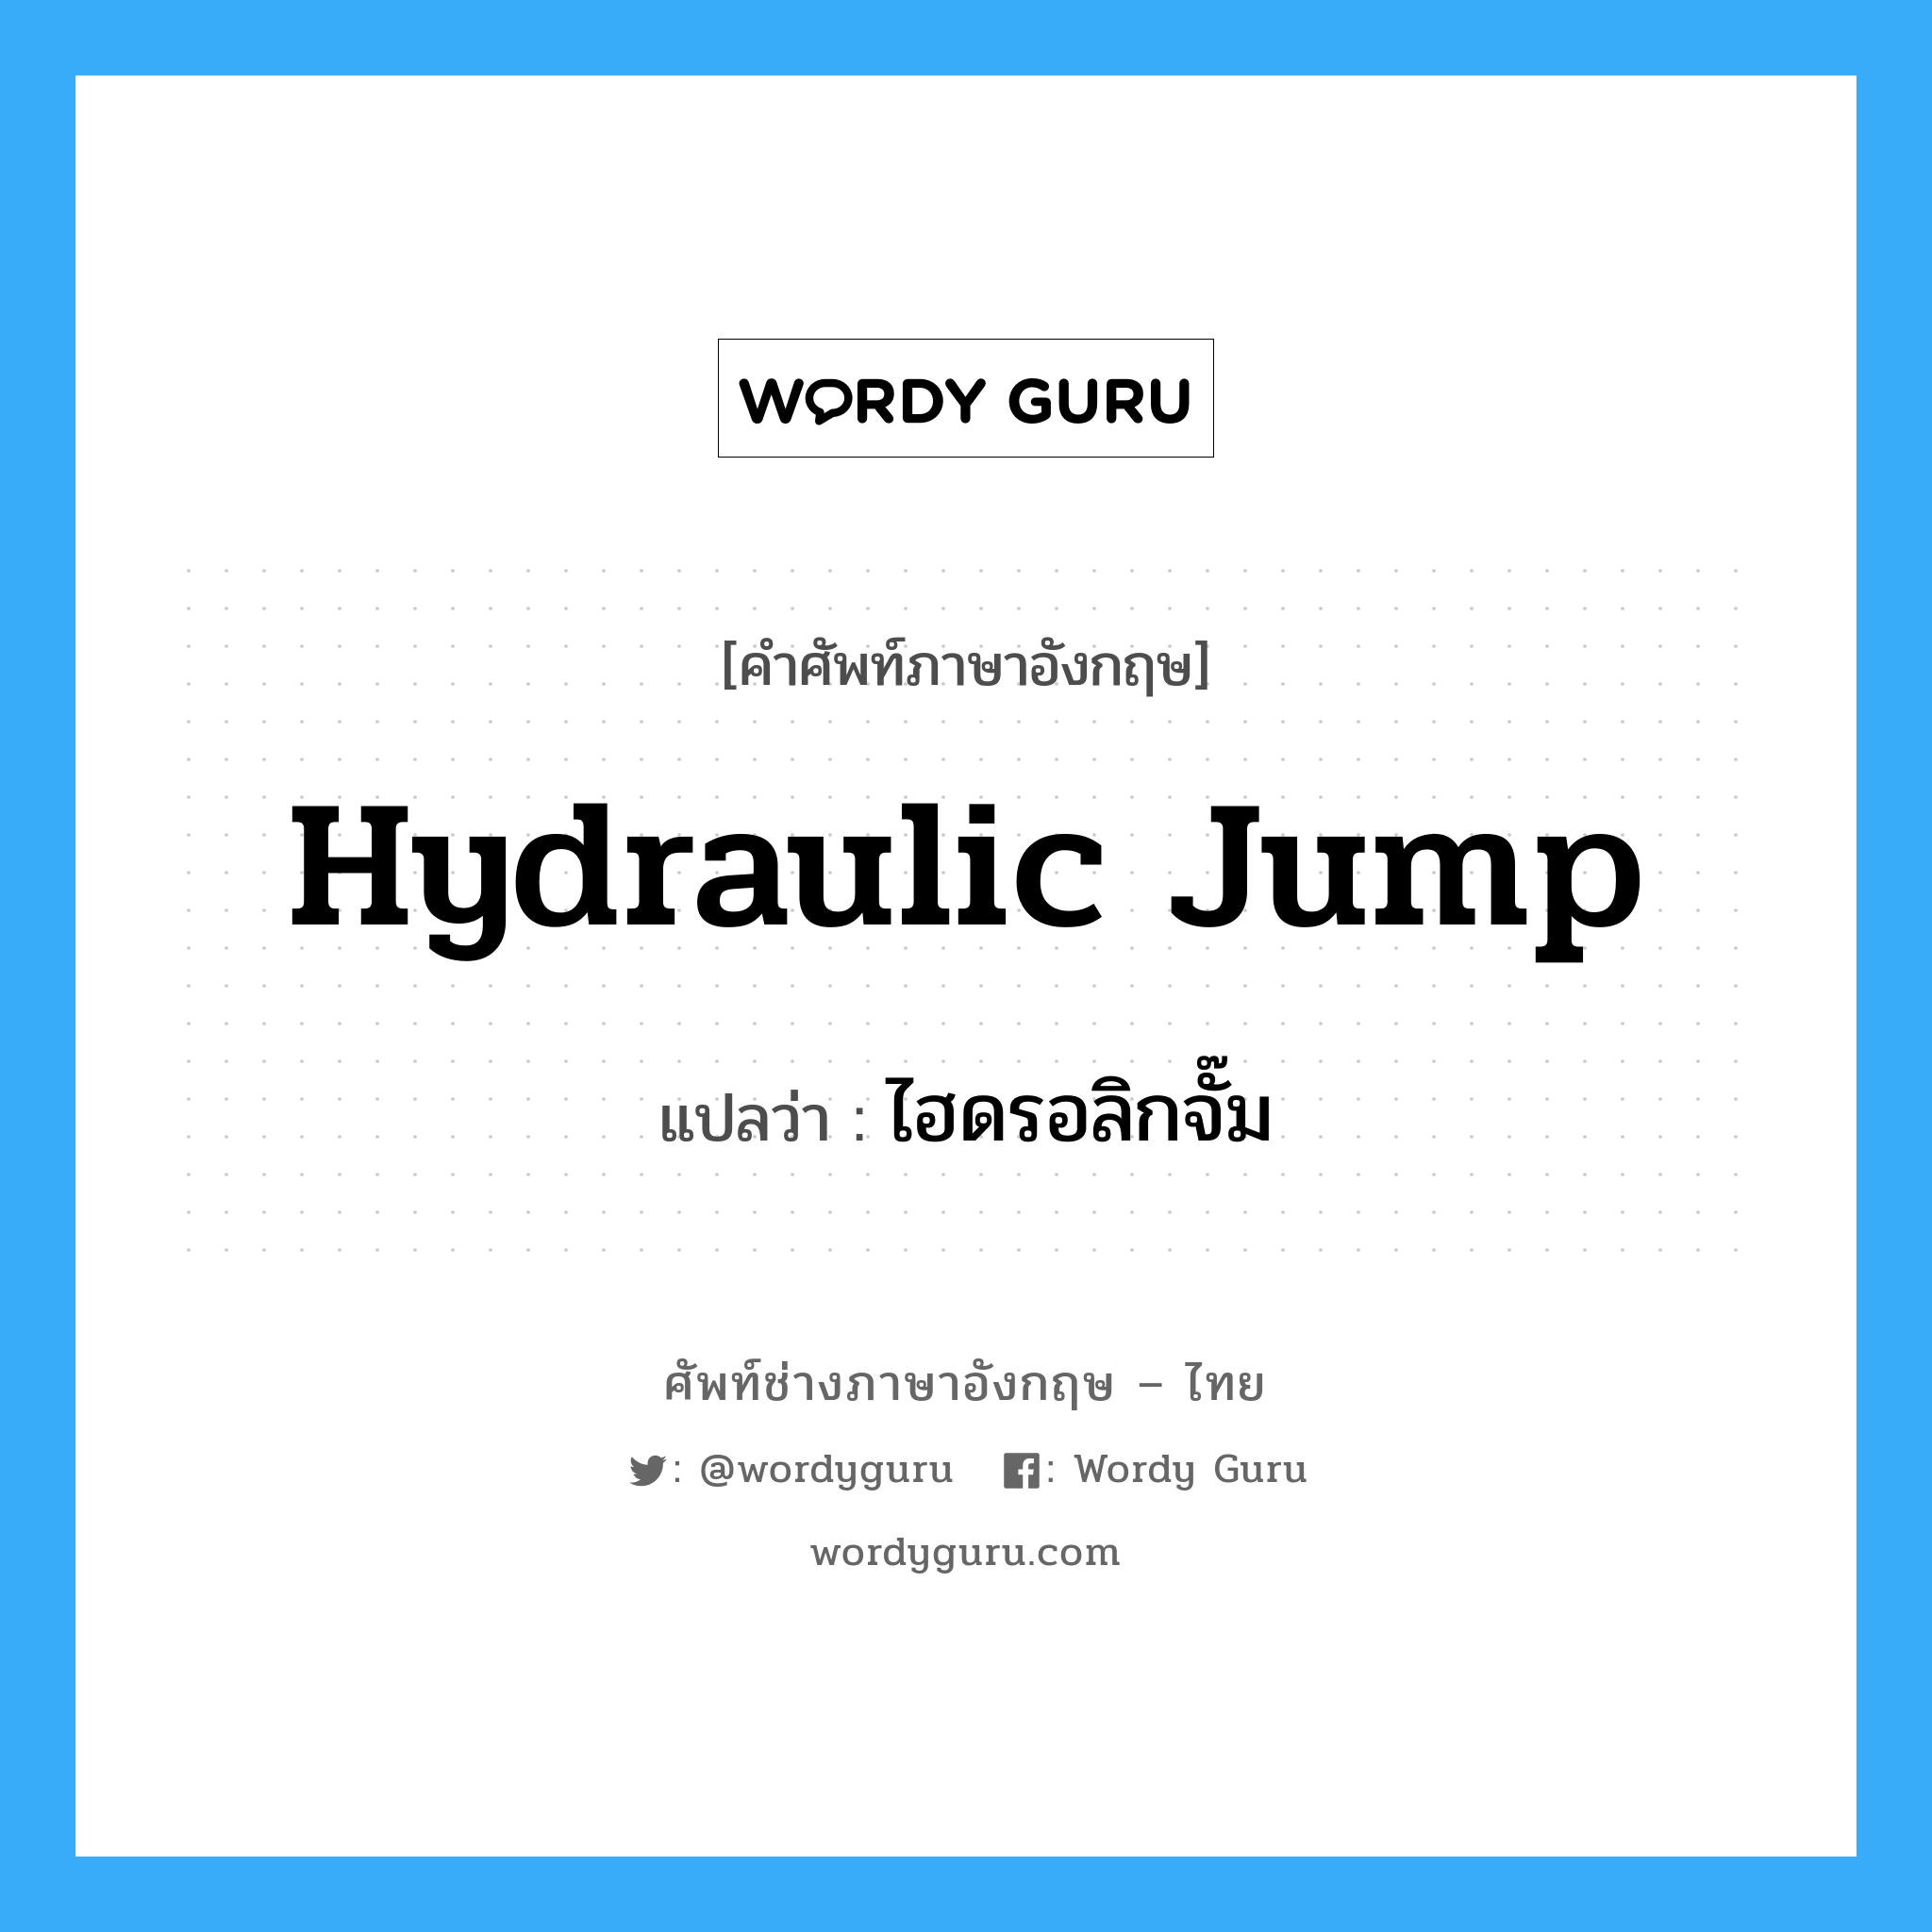 hydraulic jump แปลว่า?, คำศัพท์ช่างภาษาอังกฤษ - ไทย hydraulic jump คำศัพท์ภาษาอังกฤษ hydraulic jump แปลว่า ไฮดรอลิกจั๊ม